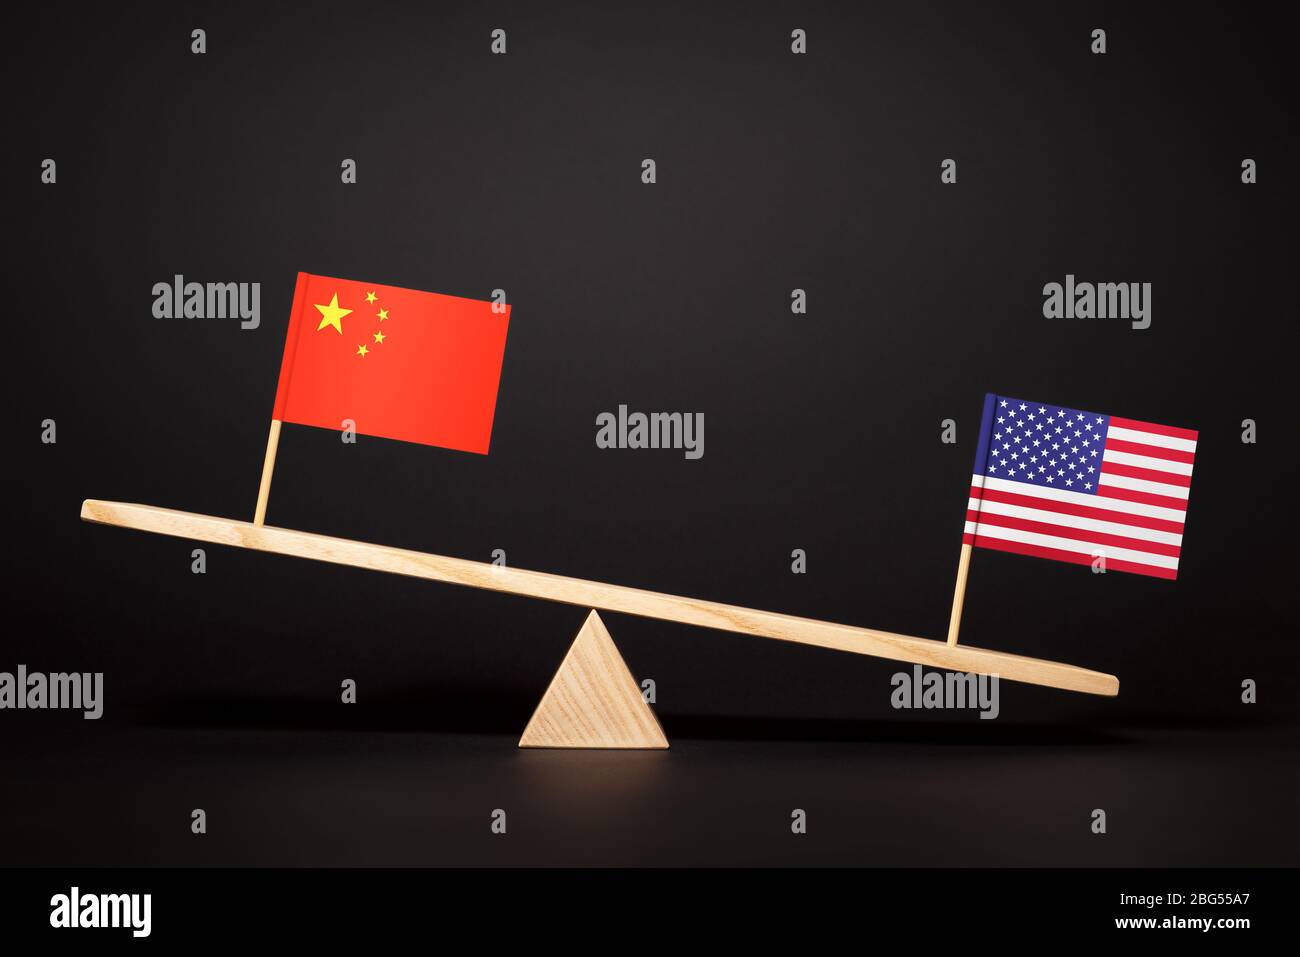 Kampf um die Führung zweier Volkswirtschaften. Handels- und Wirtschaftskrieg der USA und Chinas. Beziehungen zwischen China und den Vereinigten Staaten Stockfoto